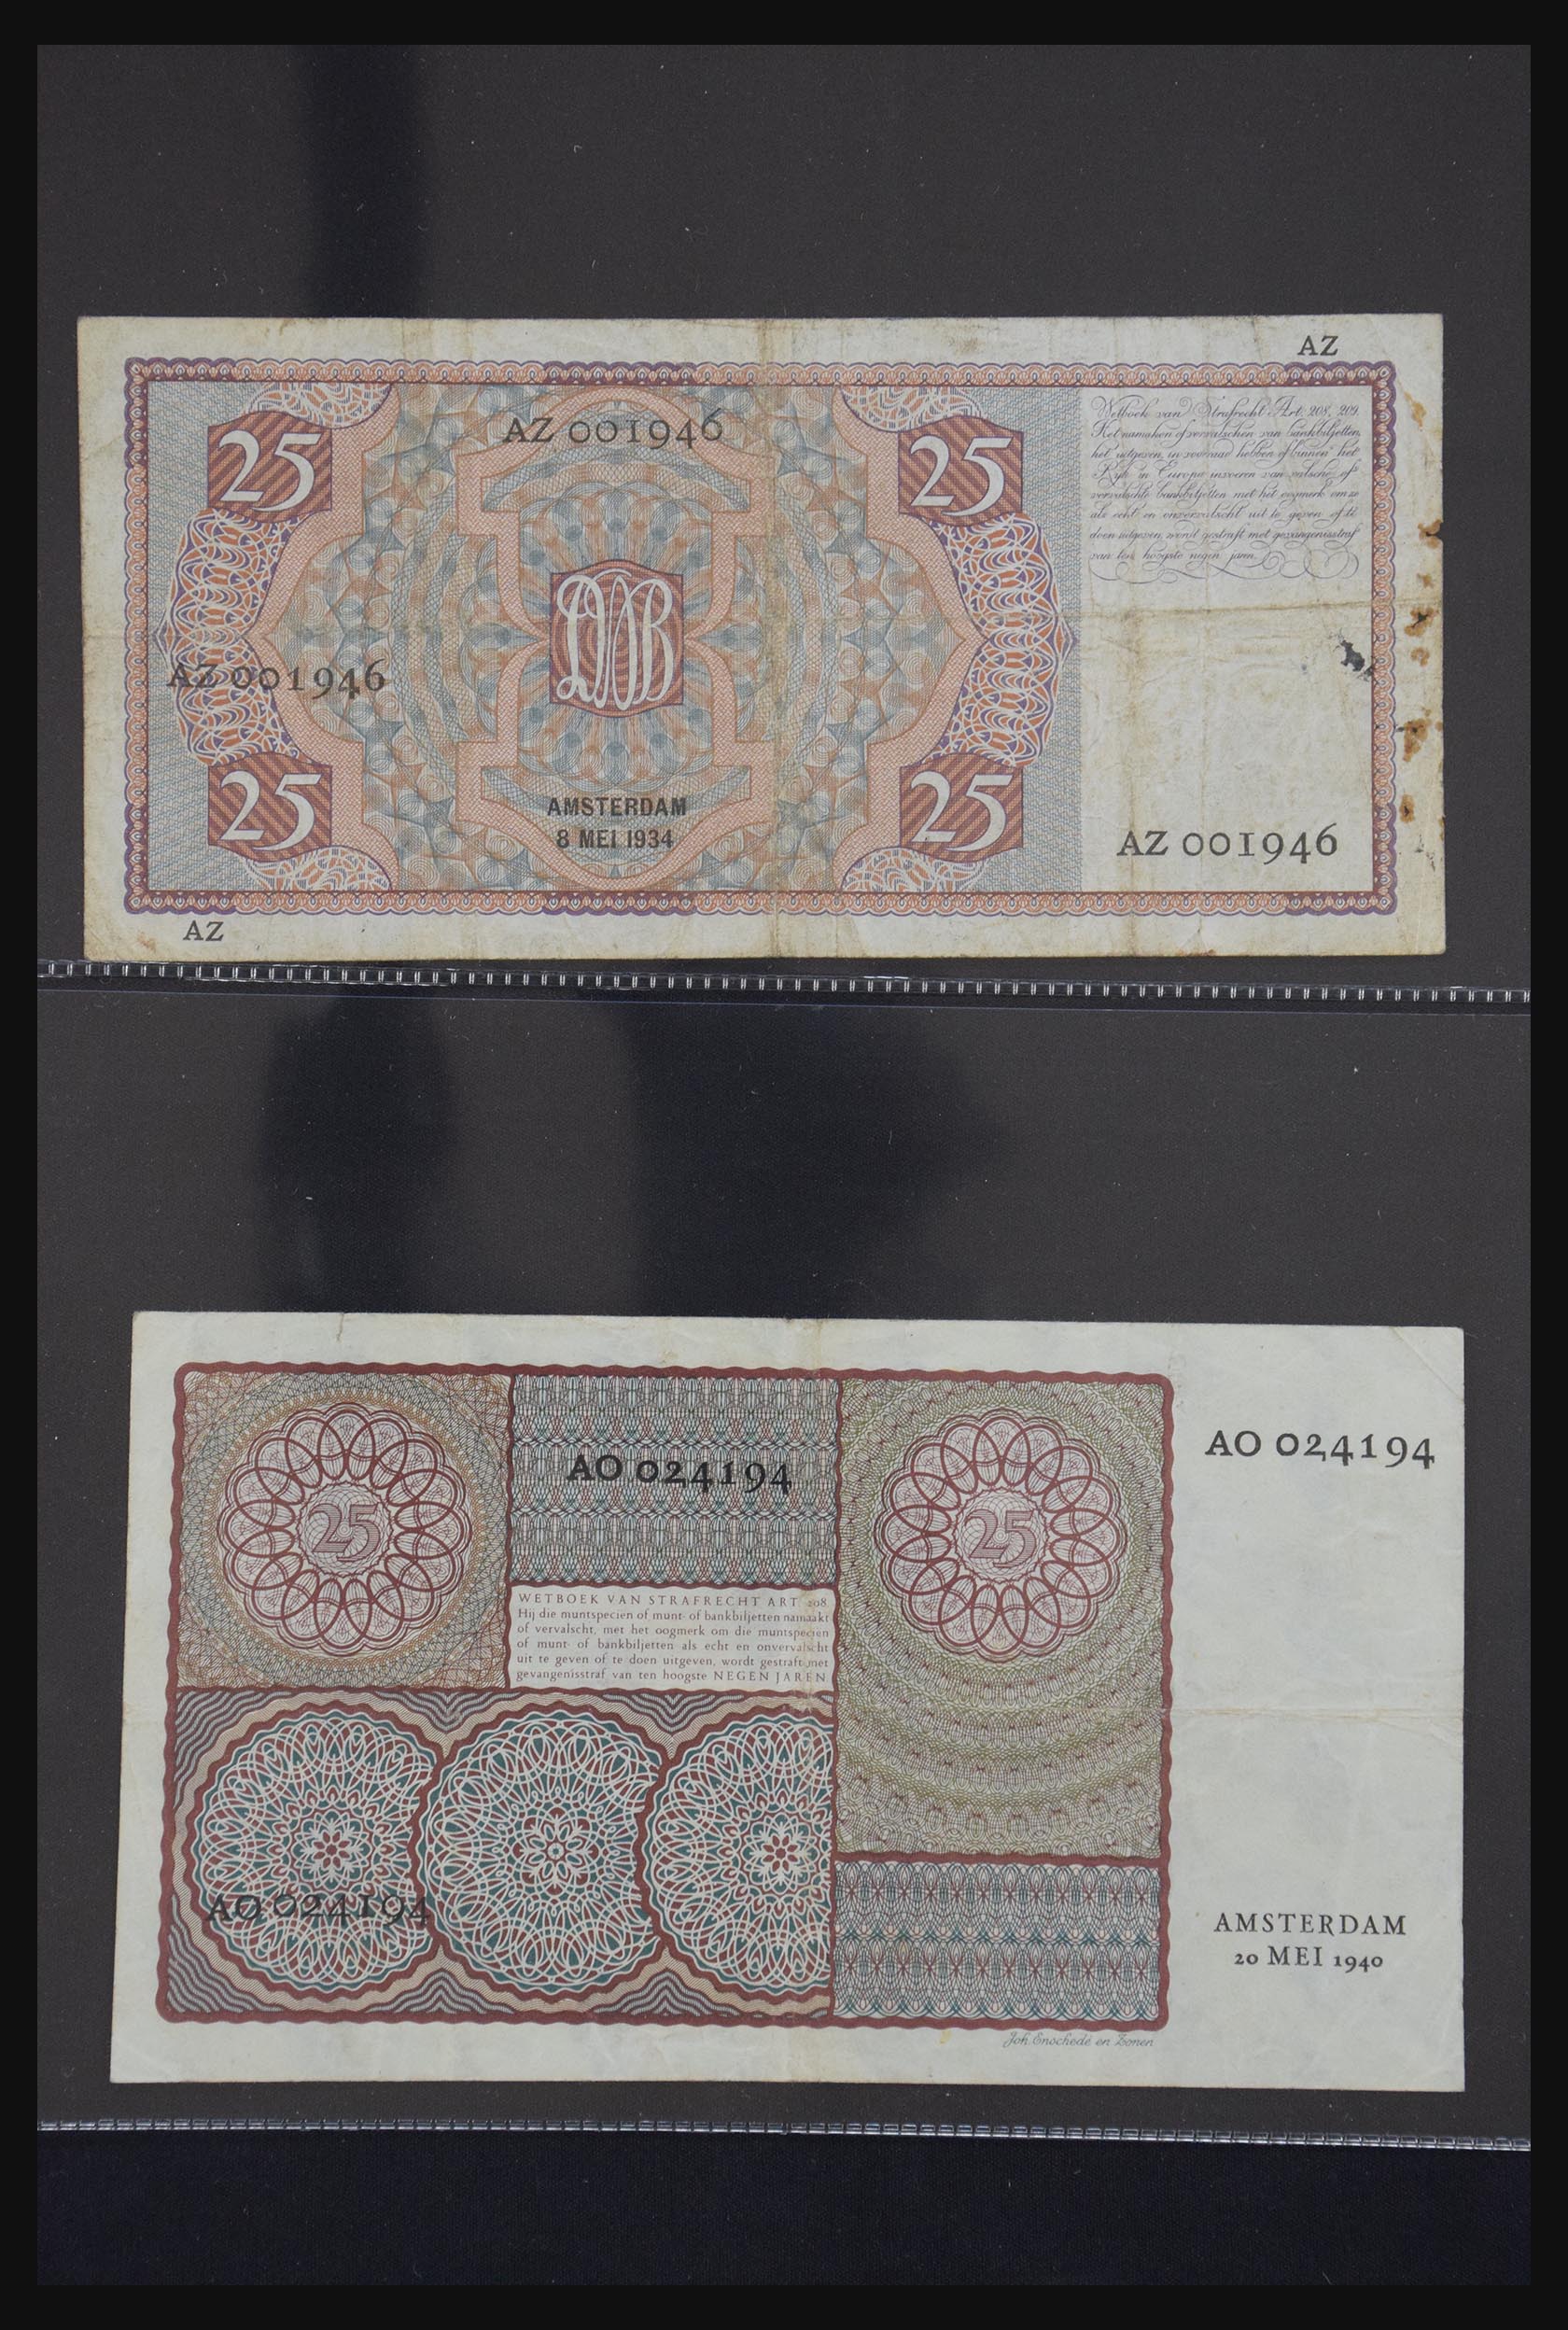 29404 028 - 29404 Netherlands banknotes 1924-1997.